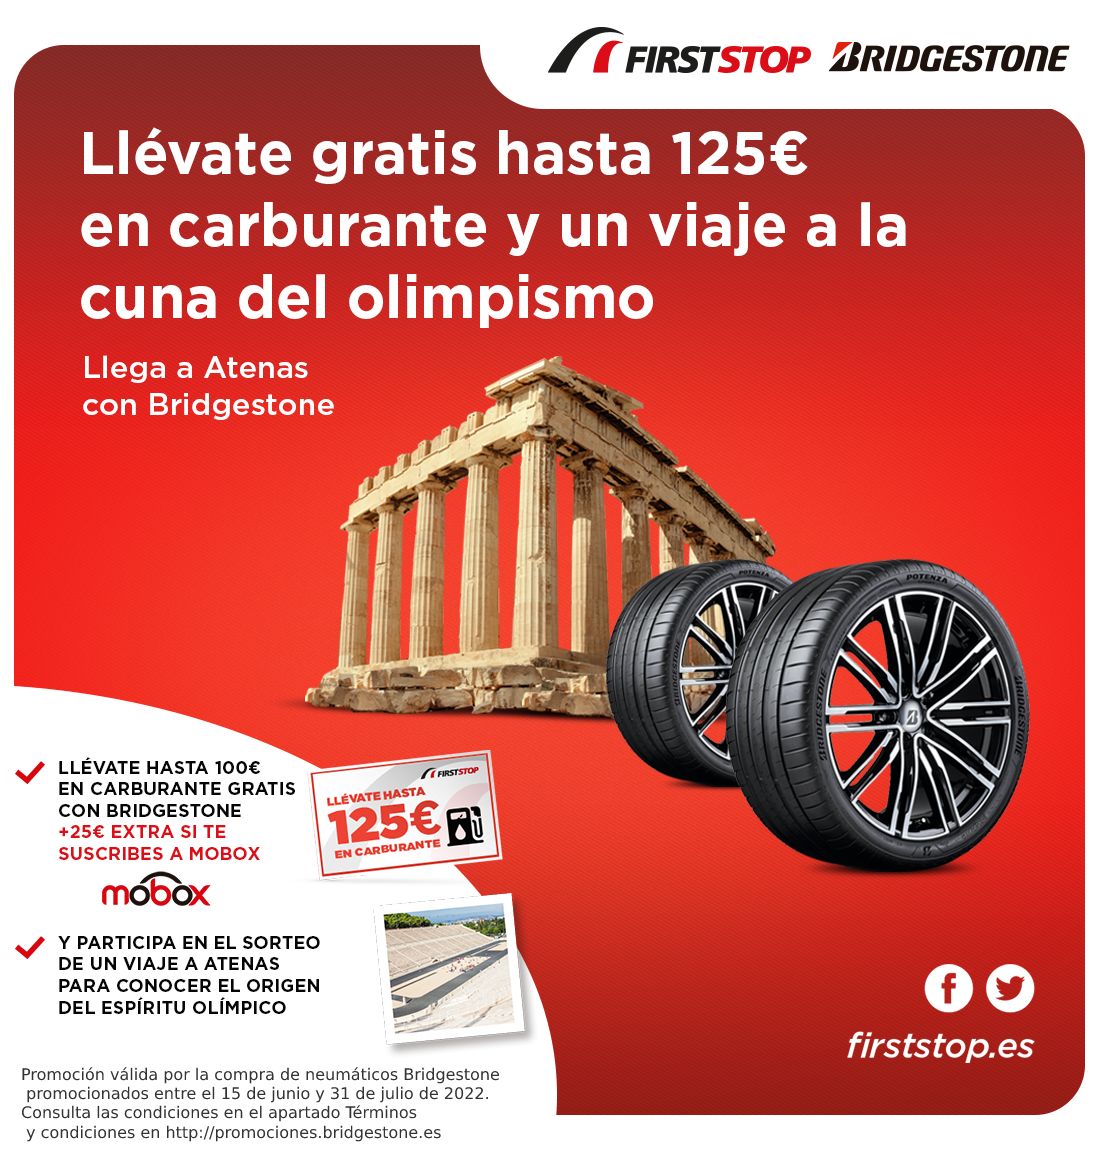 Llévate hasta 125€ en carburante y un viaje a la cuna del olimpismo al montar neumáticos Bridgestone promocionados.